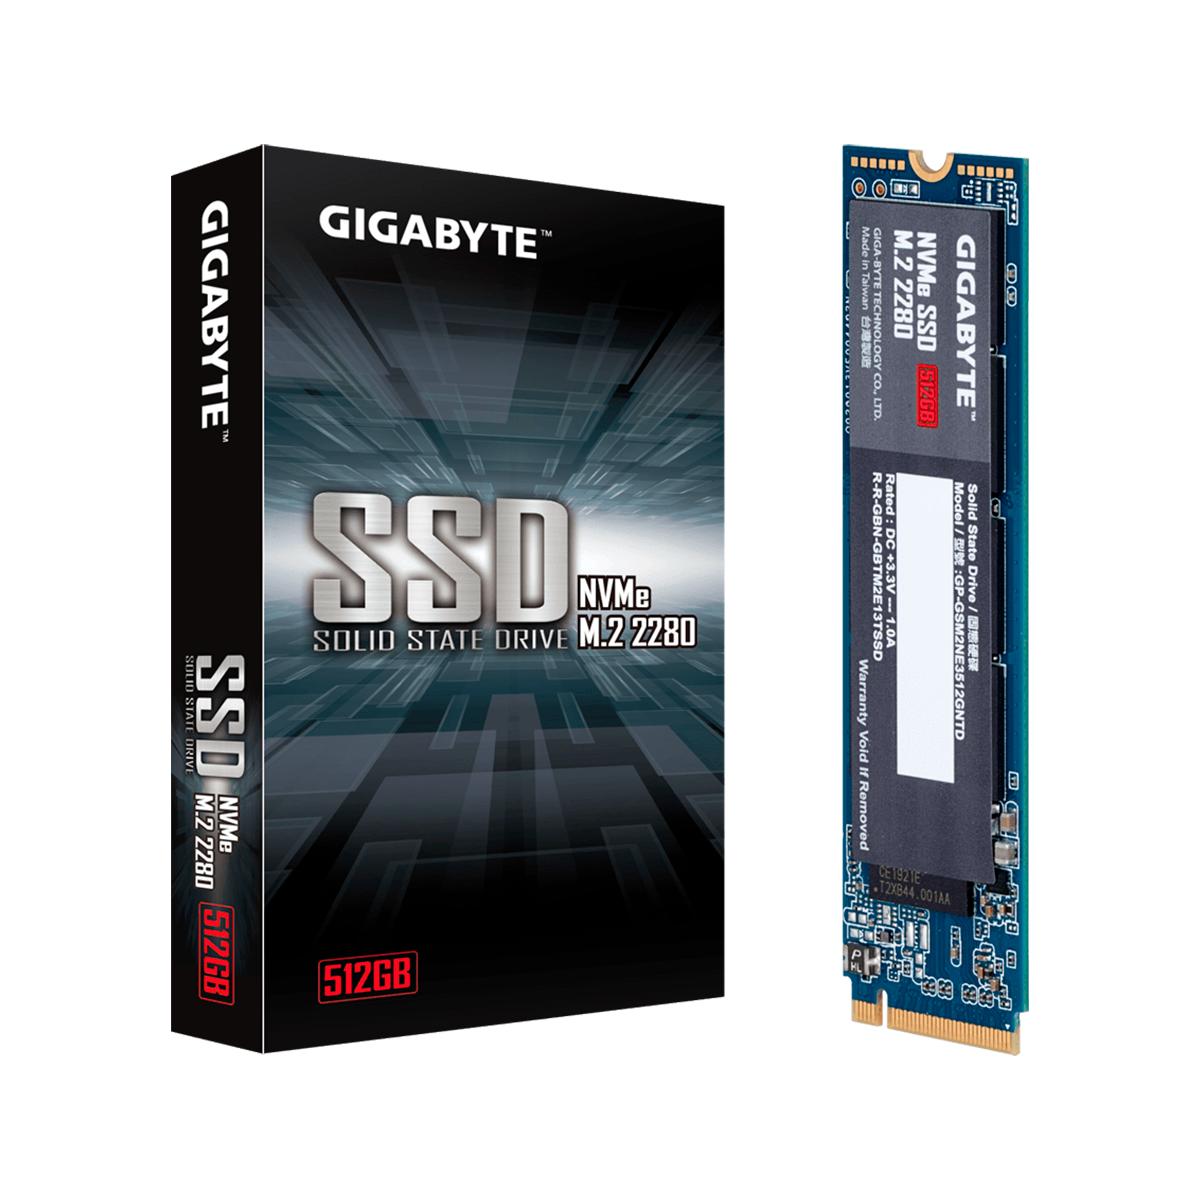 SSD INTERNO GIGABYTE 512GB M.2 2280 NAND FLASH NVME 1.3 PCIE3.0 X4 GP GSM2NE3512GNTD / Precio: $1,299.00